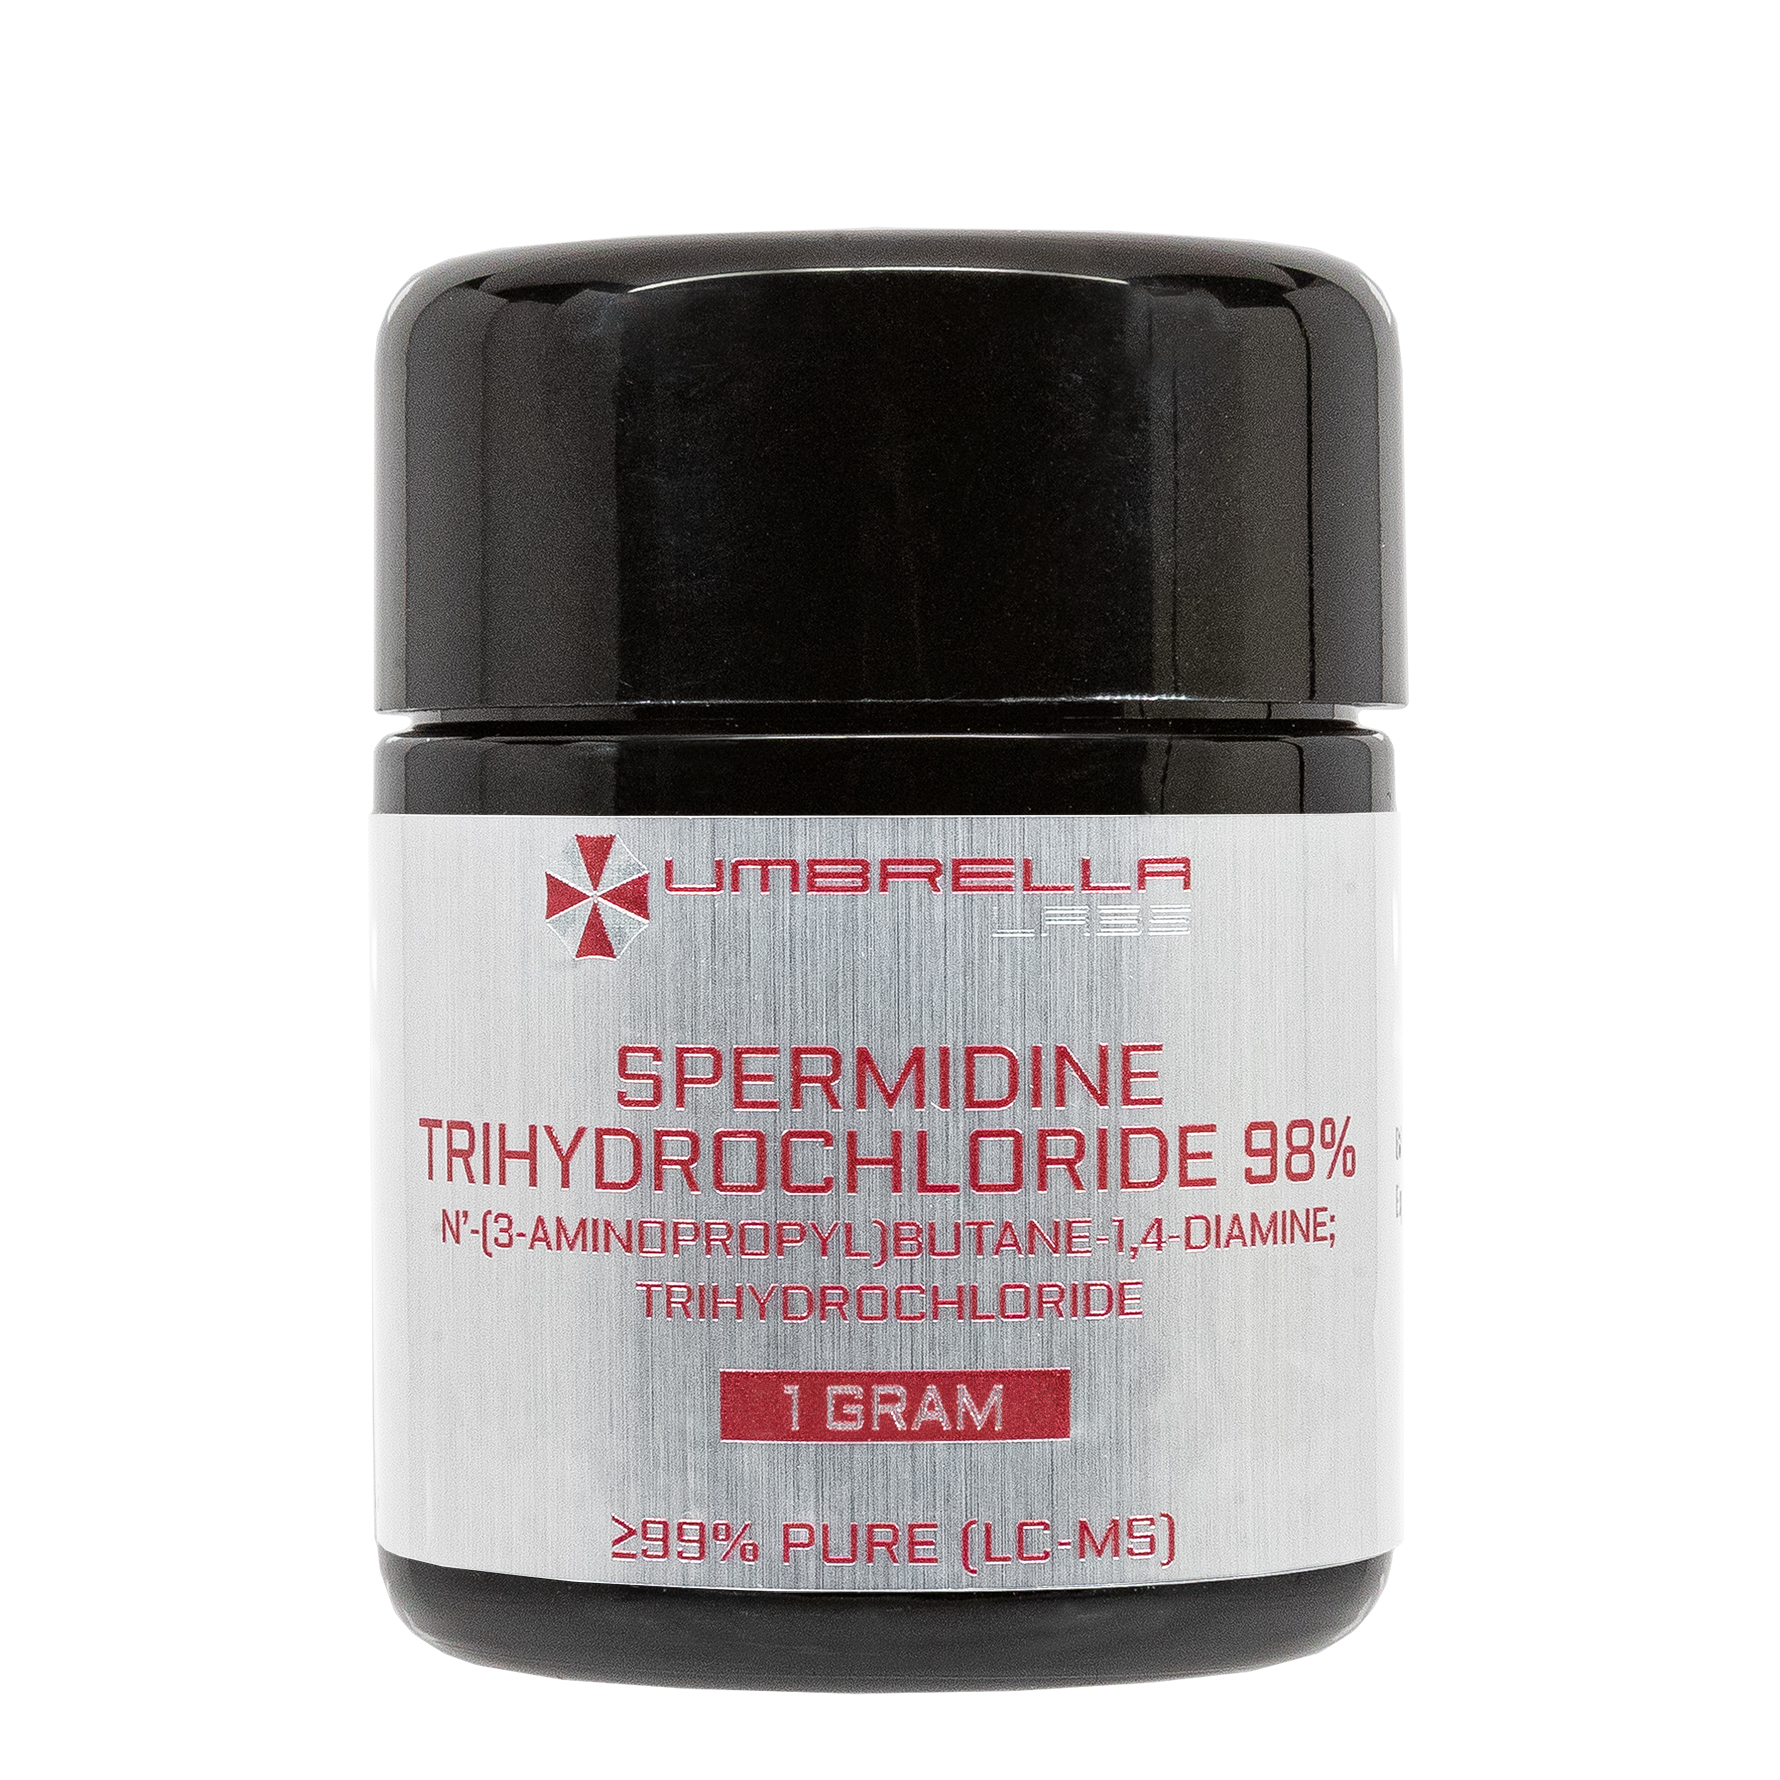 spermidine trihydrochloride 98%